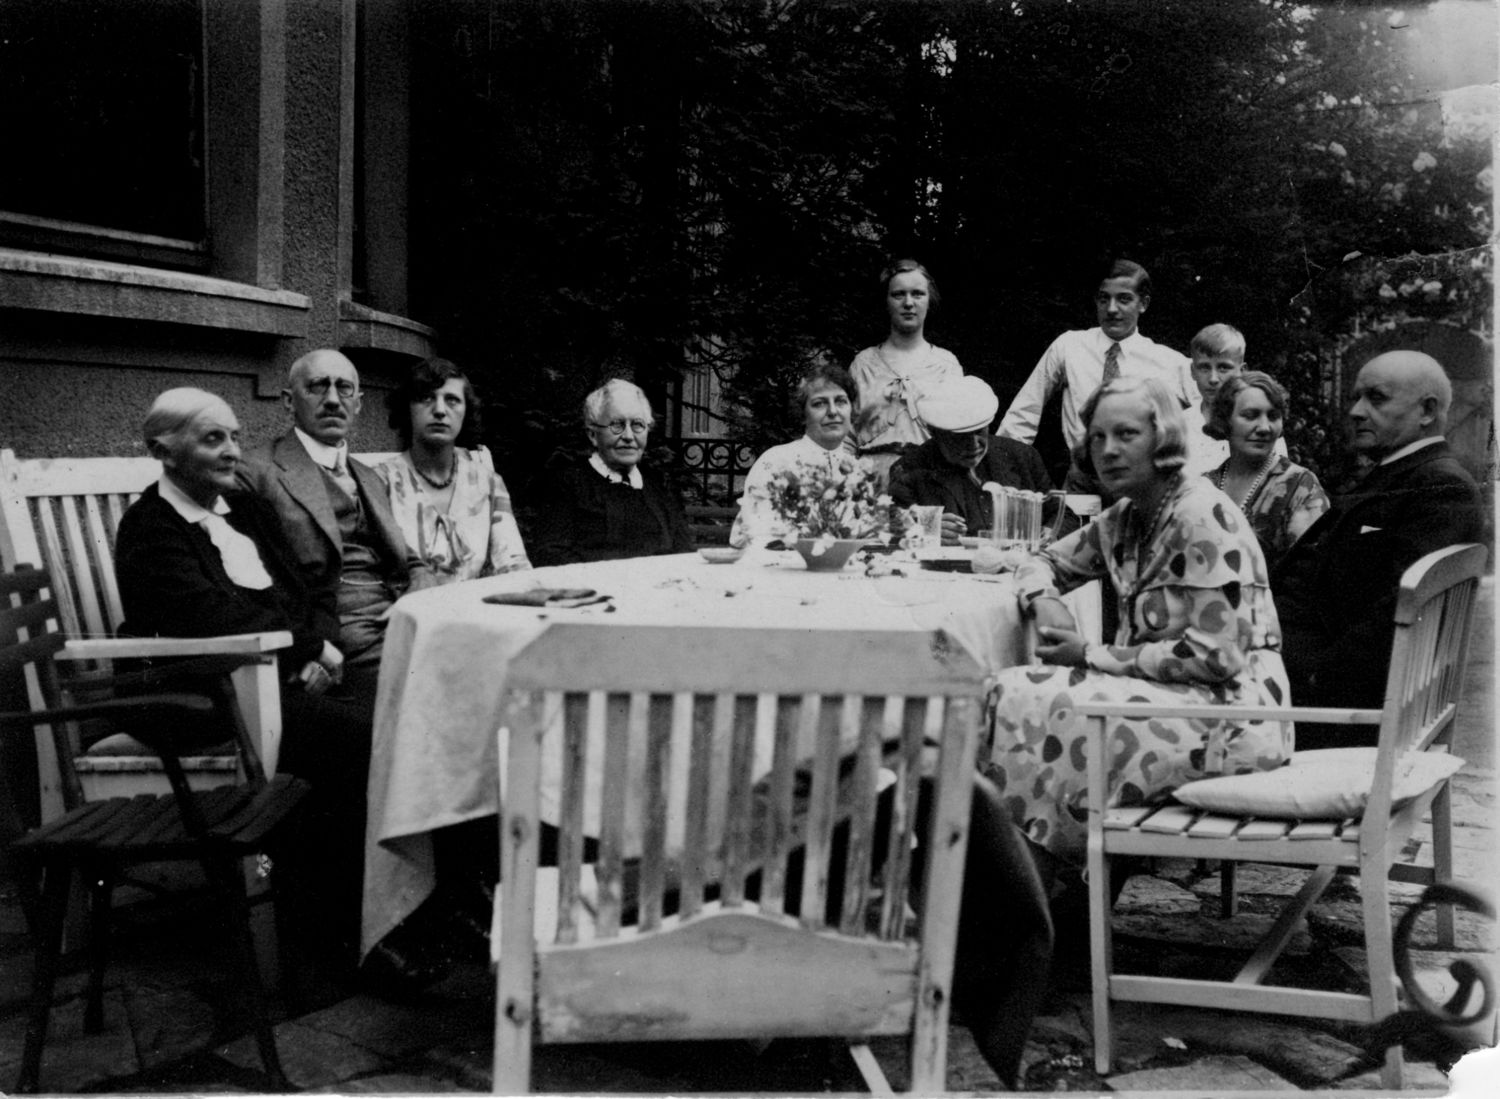 Jawlensky bei Familie Kirchhoff im Garten am Tisch, Beethovenstraße 10, Sommer 1927. Foto: Privatarchiv Heinrich Kirchhoff ⁄ NachlassMieze Binsack